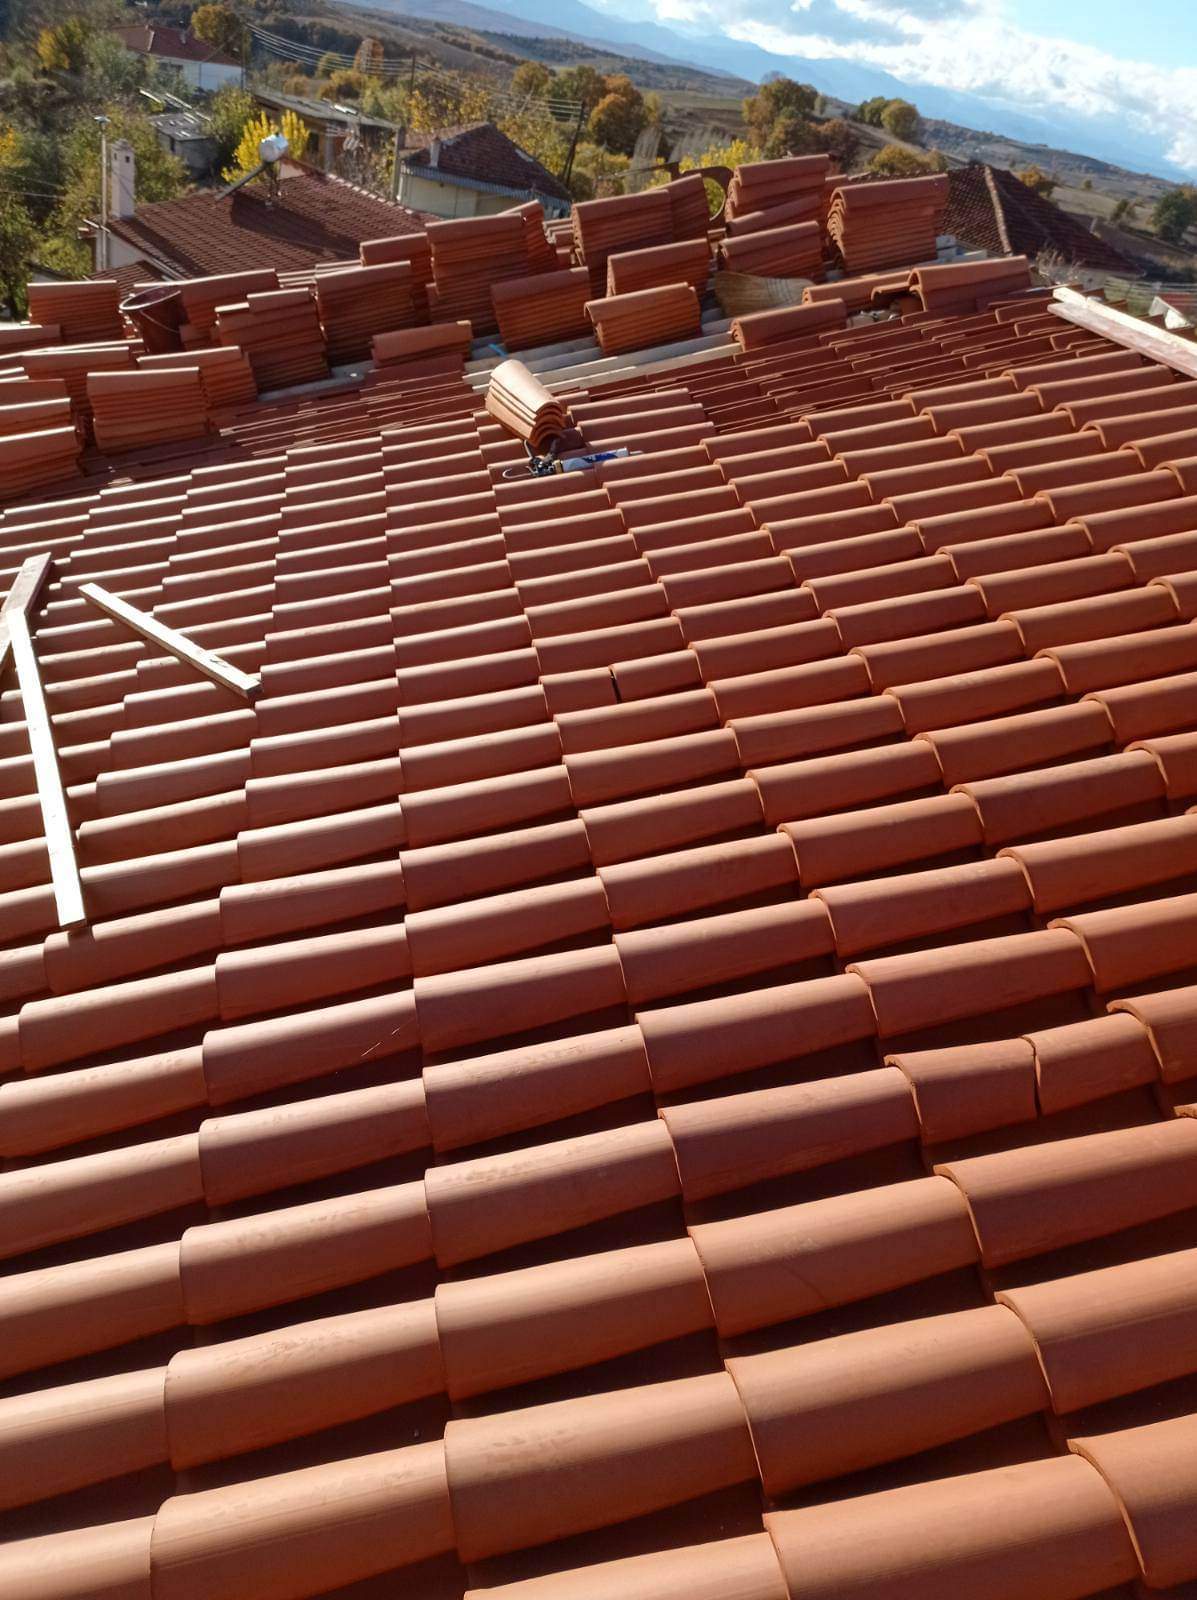 Π.Ε. Γρεβενών: Ολοκληρώθηκε η επισκευή της στέγης του Ι.Ν. Αγίου Νικολάου στη Σαρακήνα